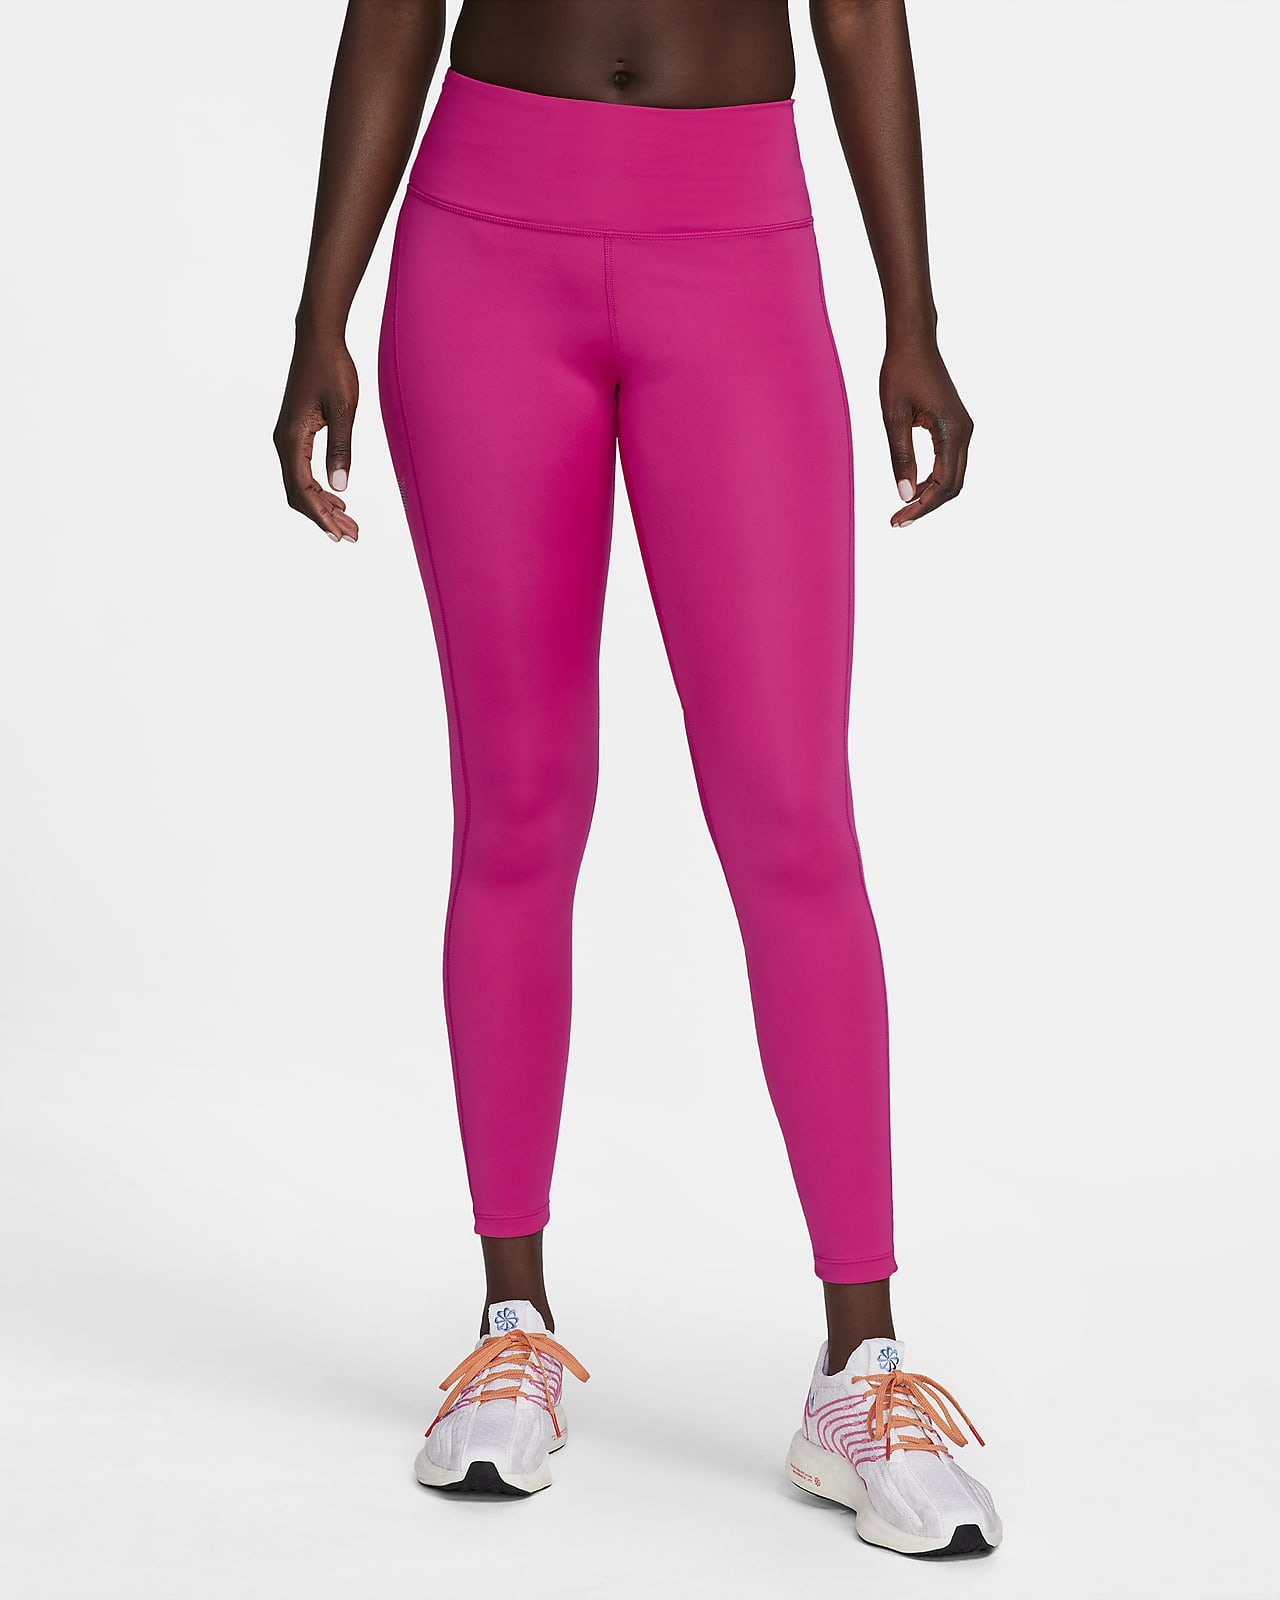 Legging 7/8 taille mi-haute avec motifs et poches Nike Fast pour femme